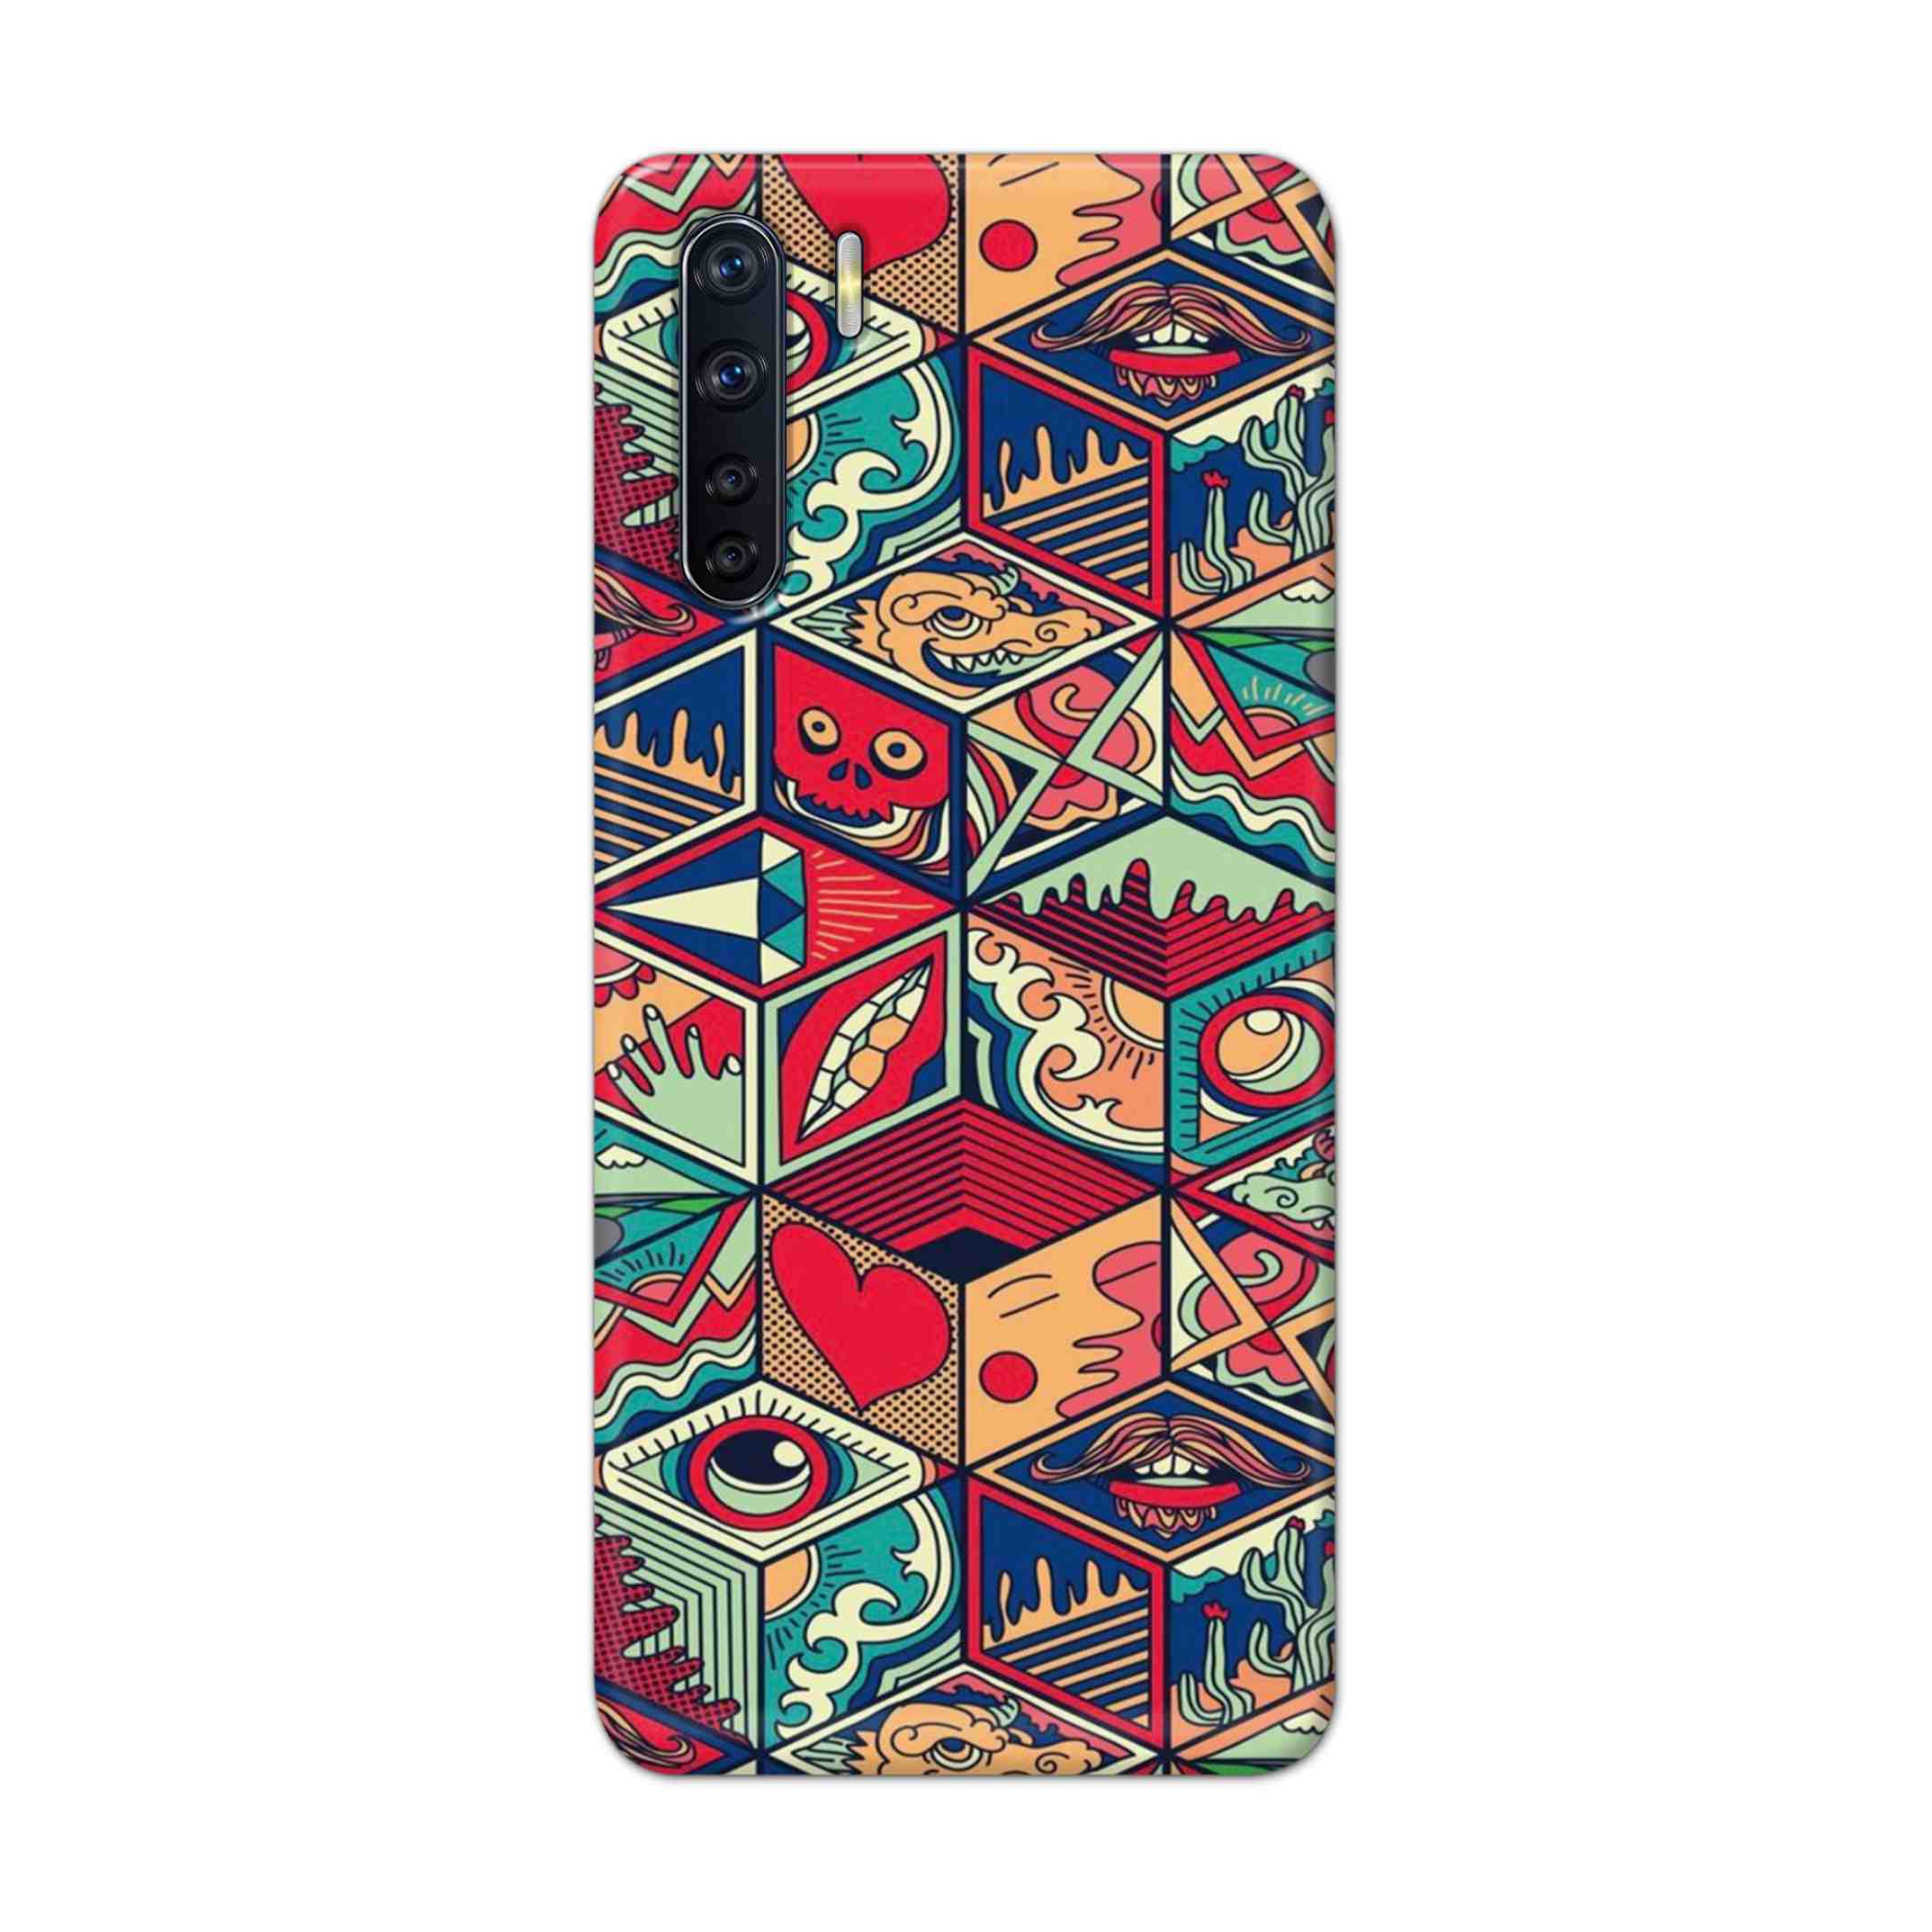 Buy Face Mandala Hard Back Mobile Phone Case Cover For OPPO F15 Online